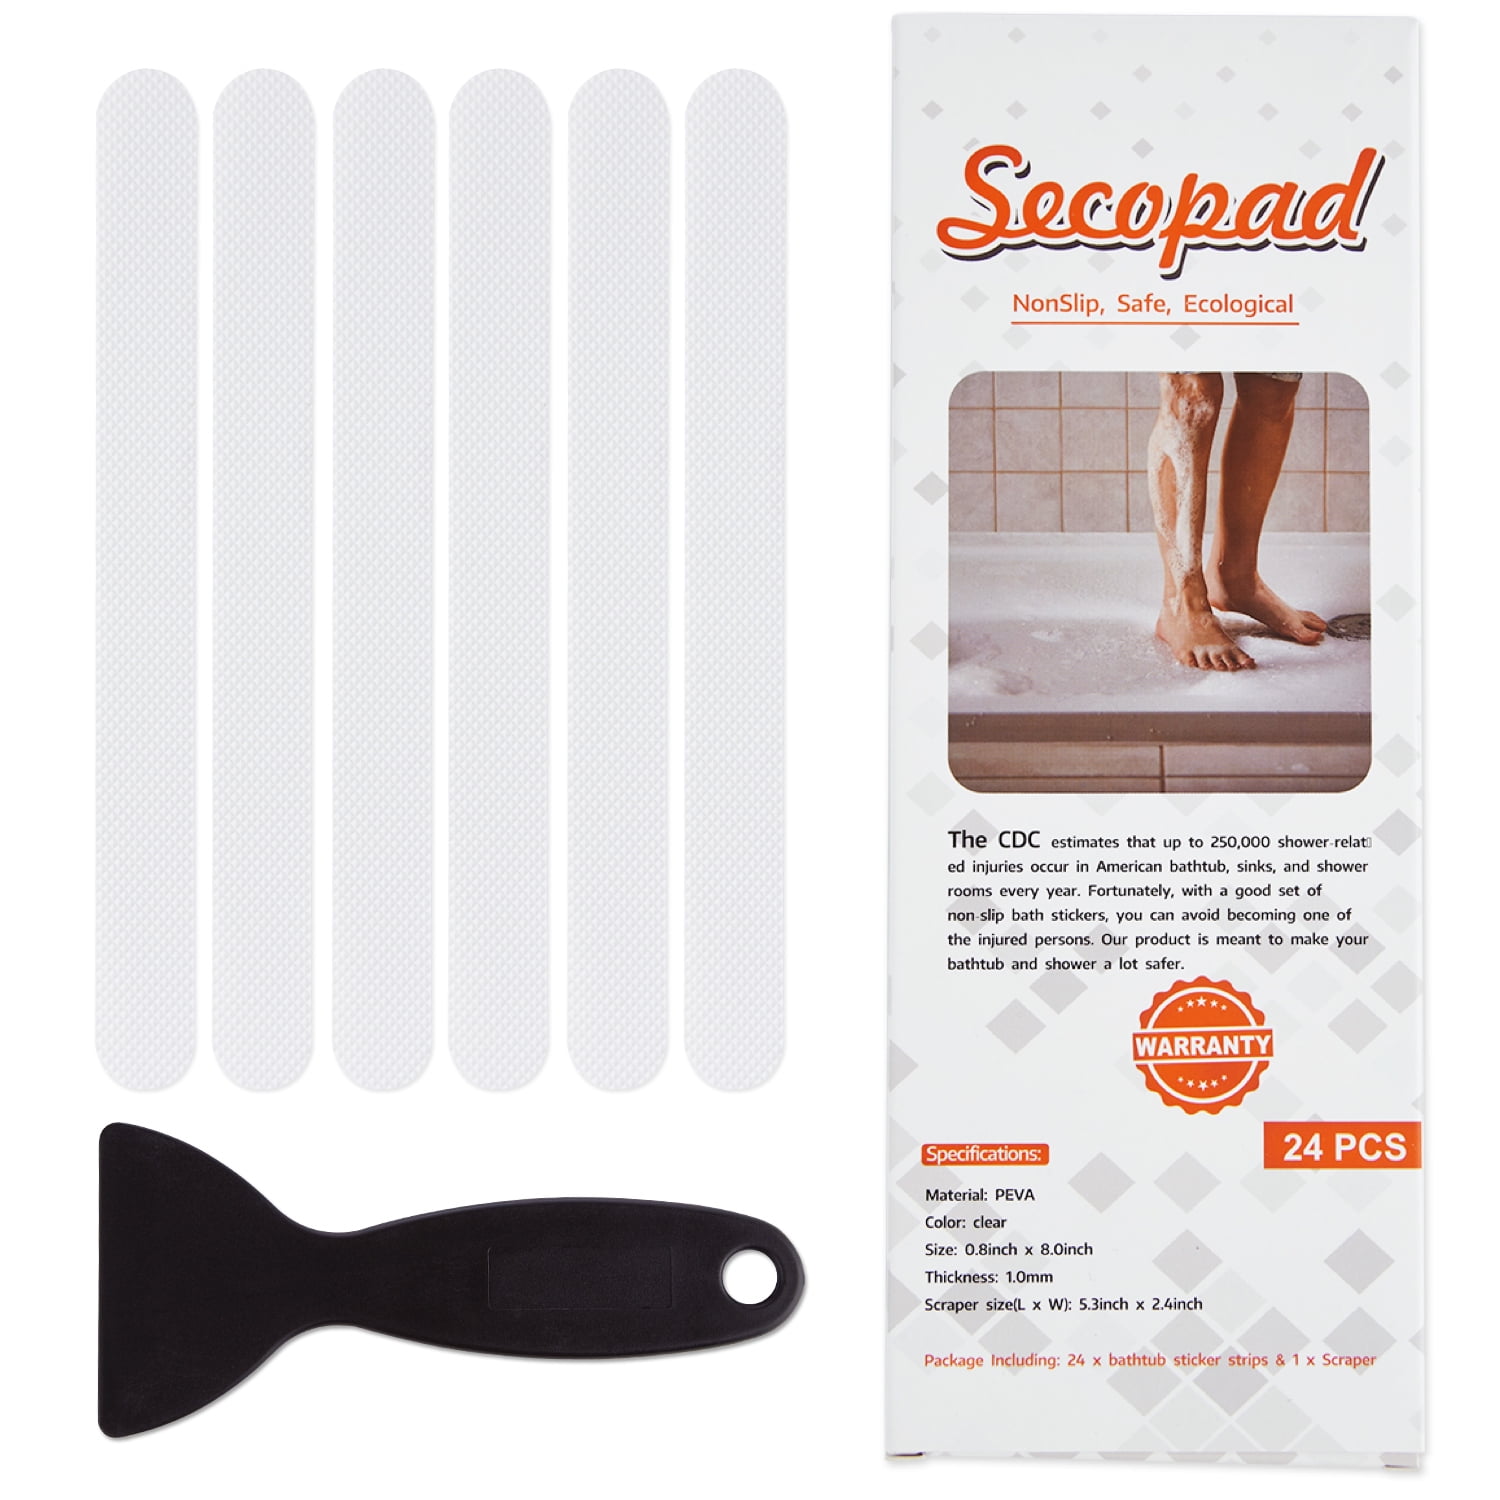 Tub Grip Clear anti-slip bathtub coating by Grip-It